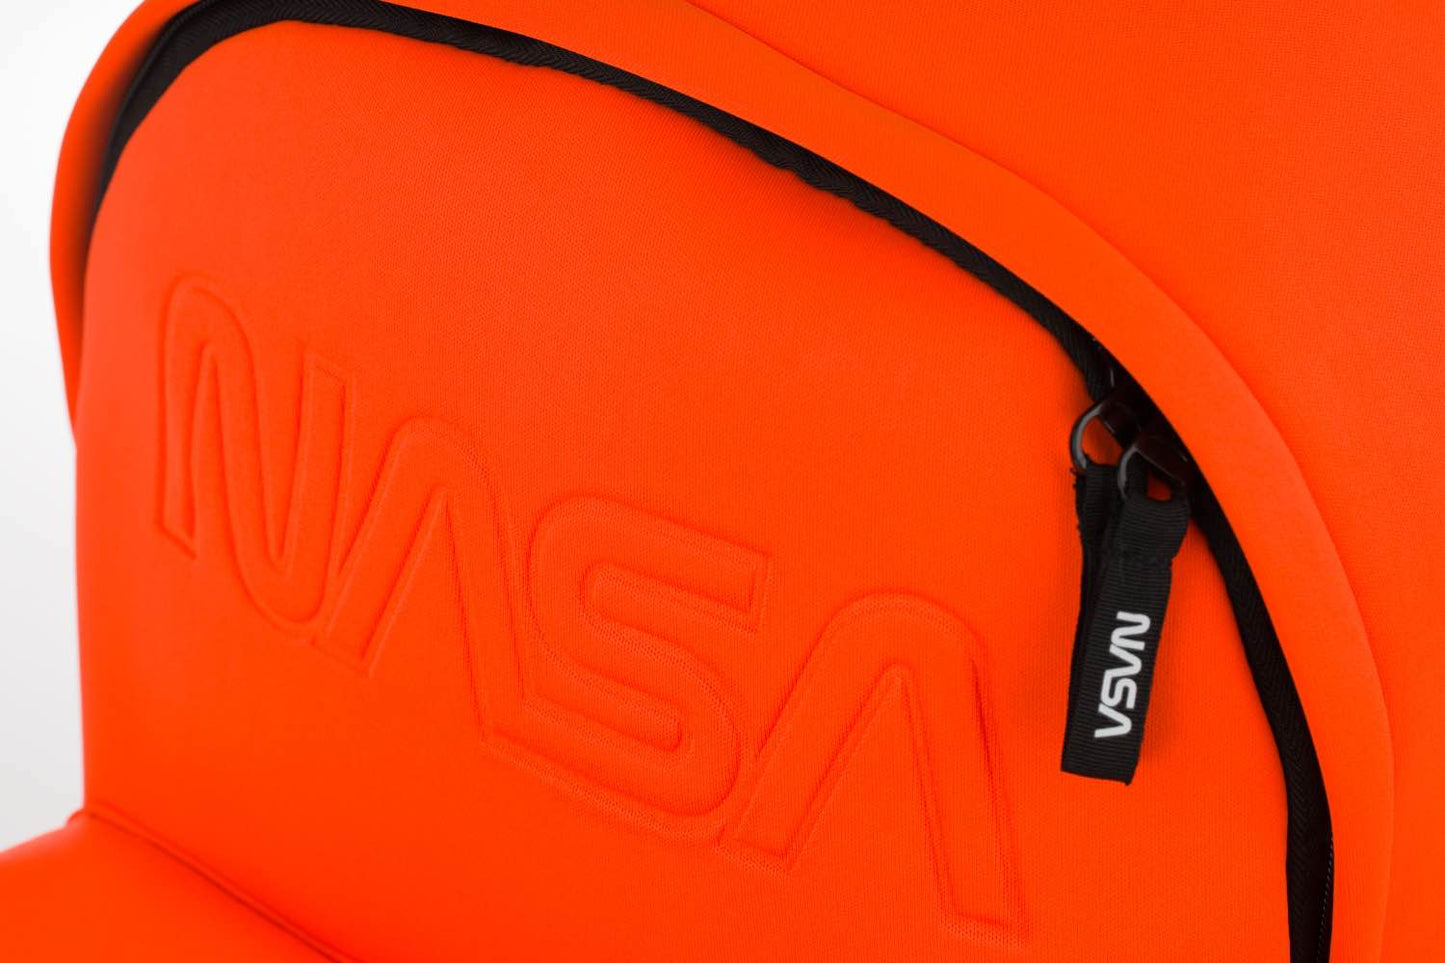 Rucksack NASA Orange